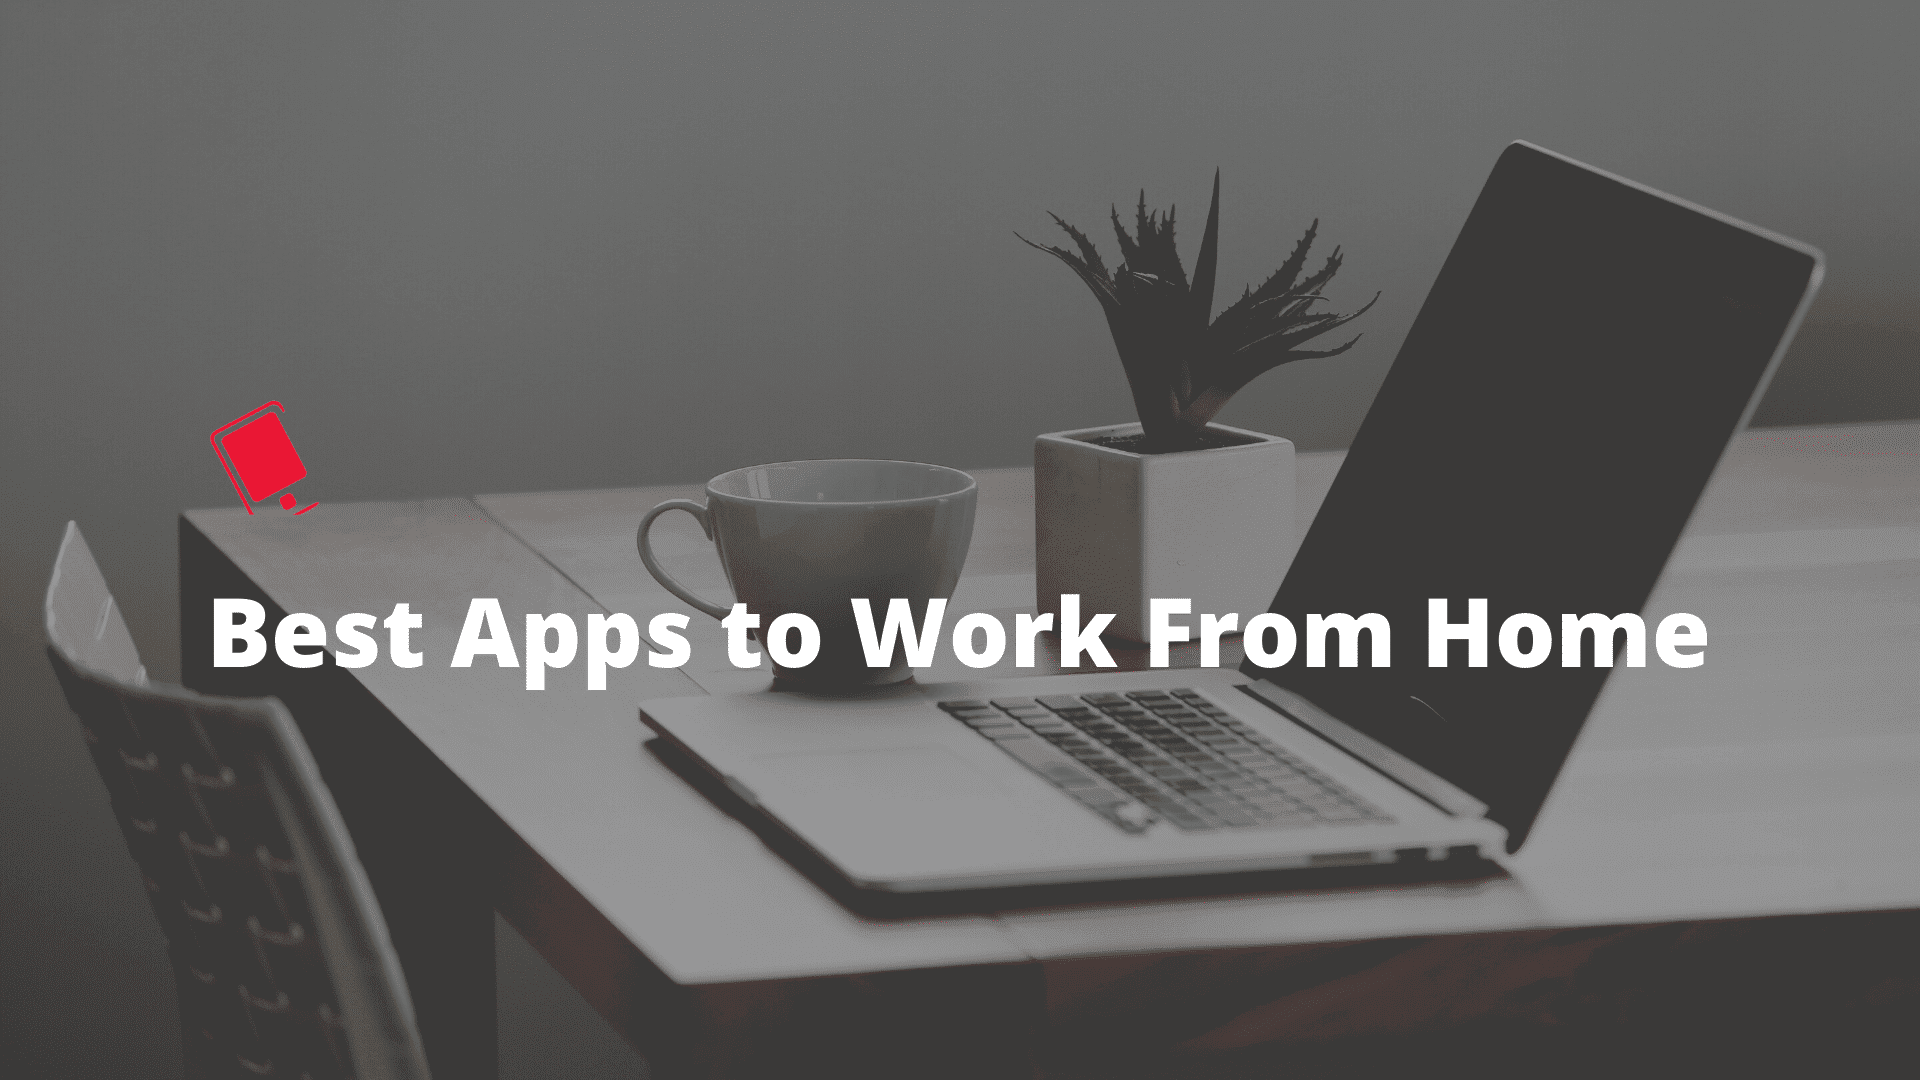 Die besten Work-from-Home-Apps und -Dienste, um die Arbeit aus der Ferne zu erleichtern 1